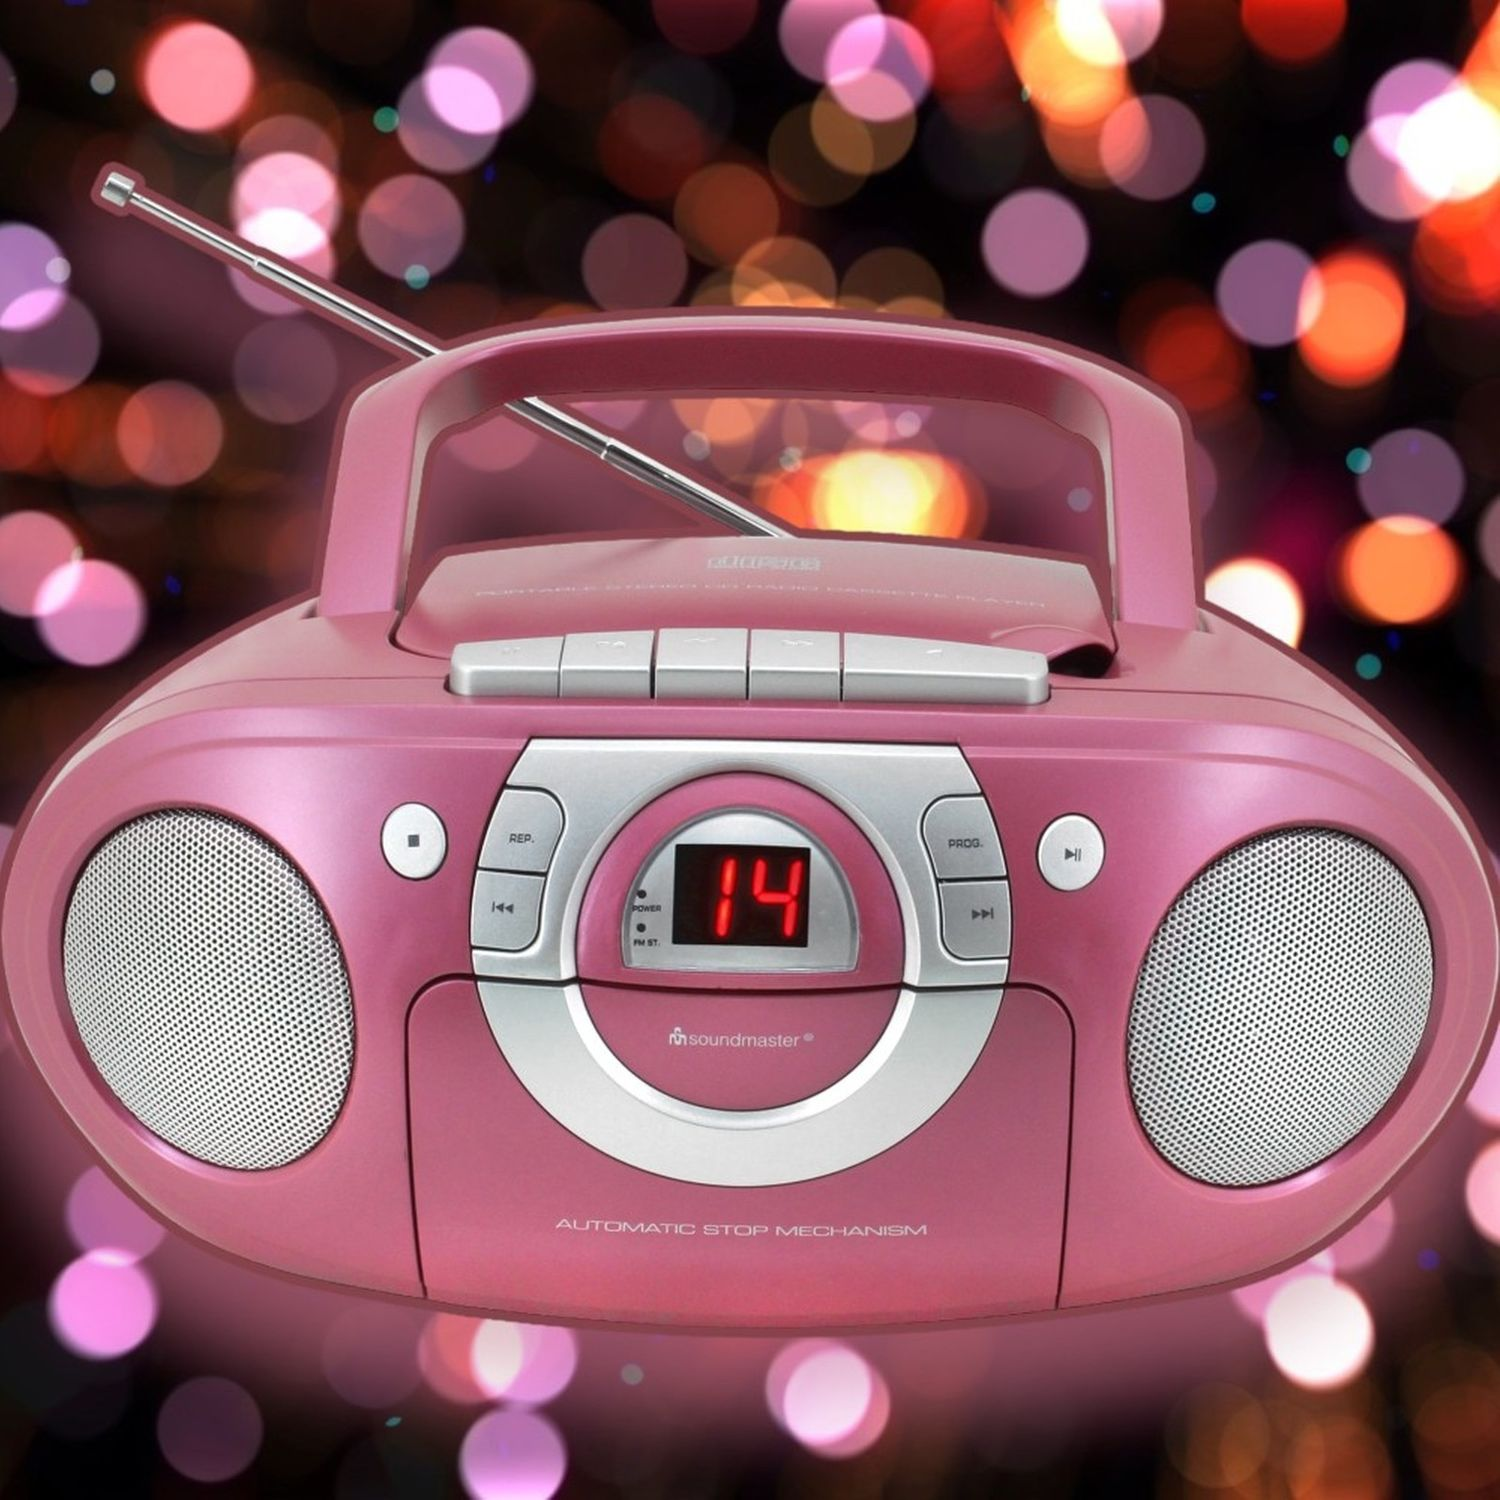 SOUNDMASTER CD-Player Pink Tragbarer SCD5100PI